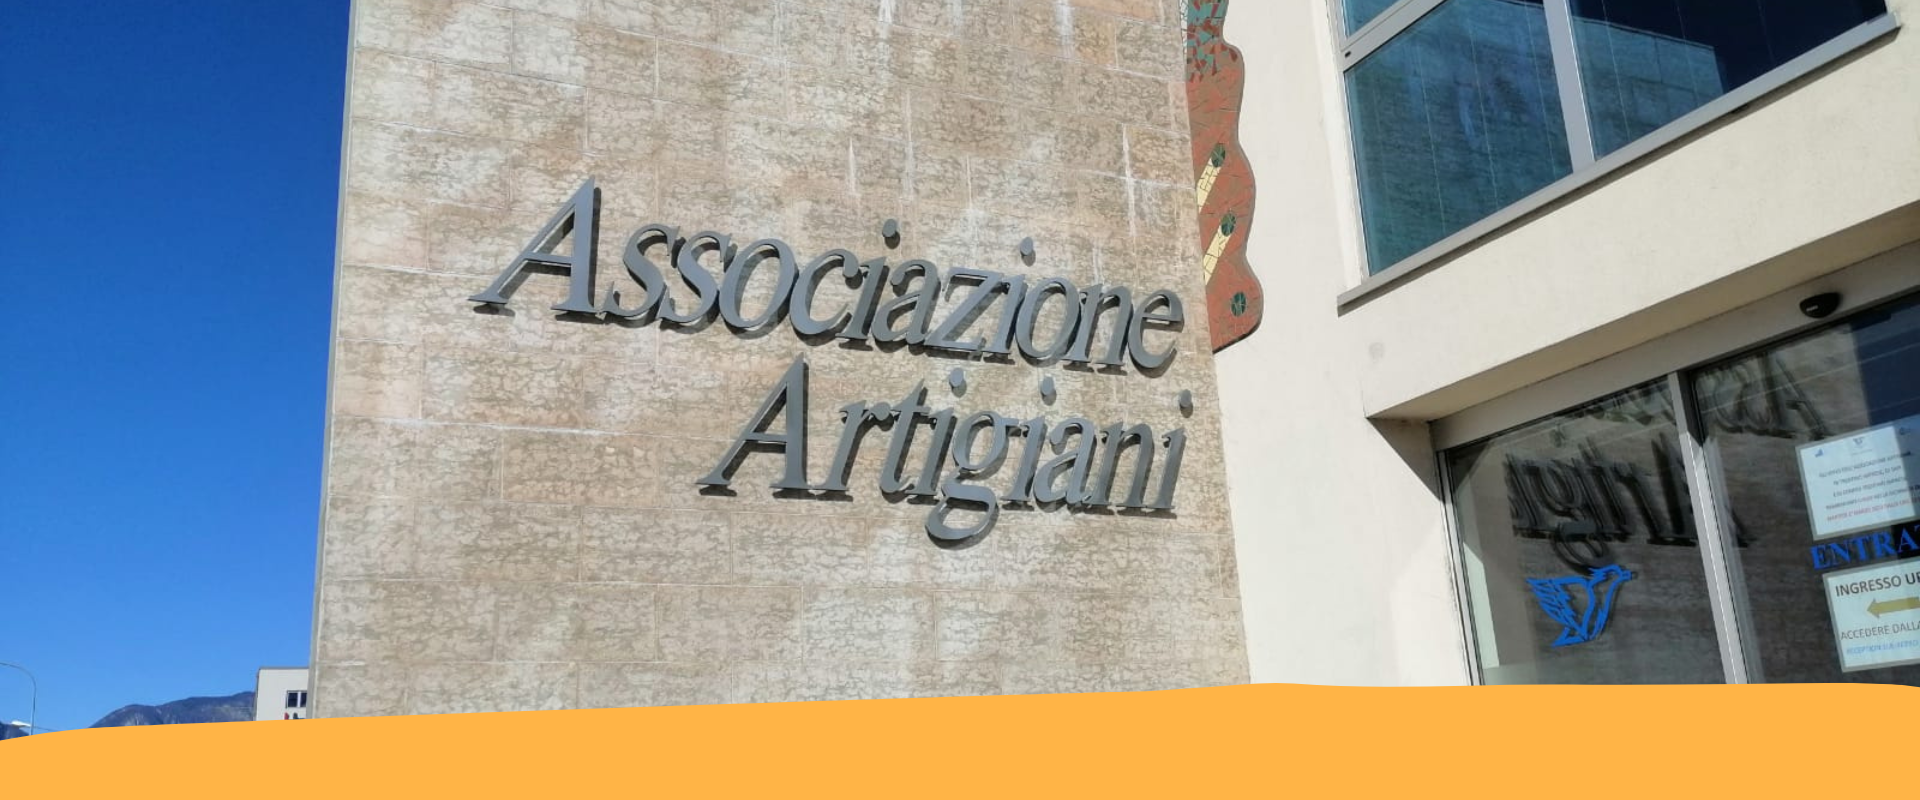 Associazione artigiani Emilia Romagna